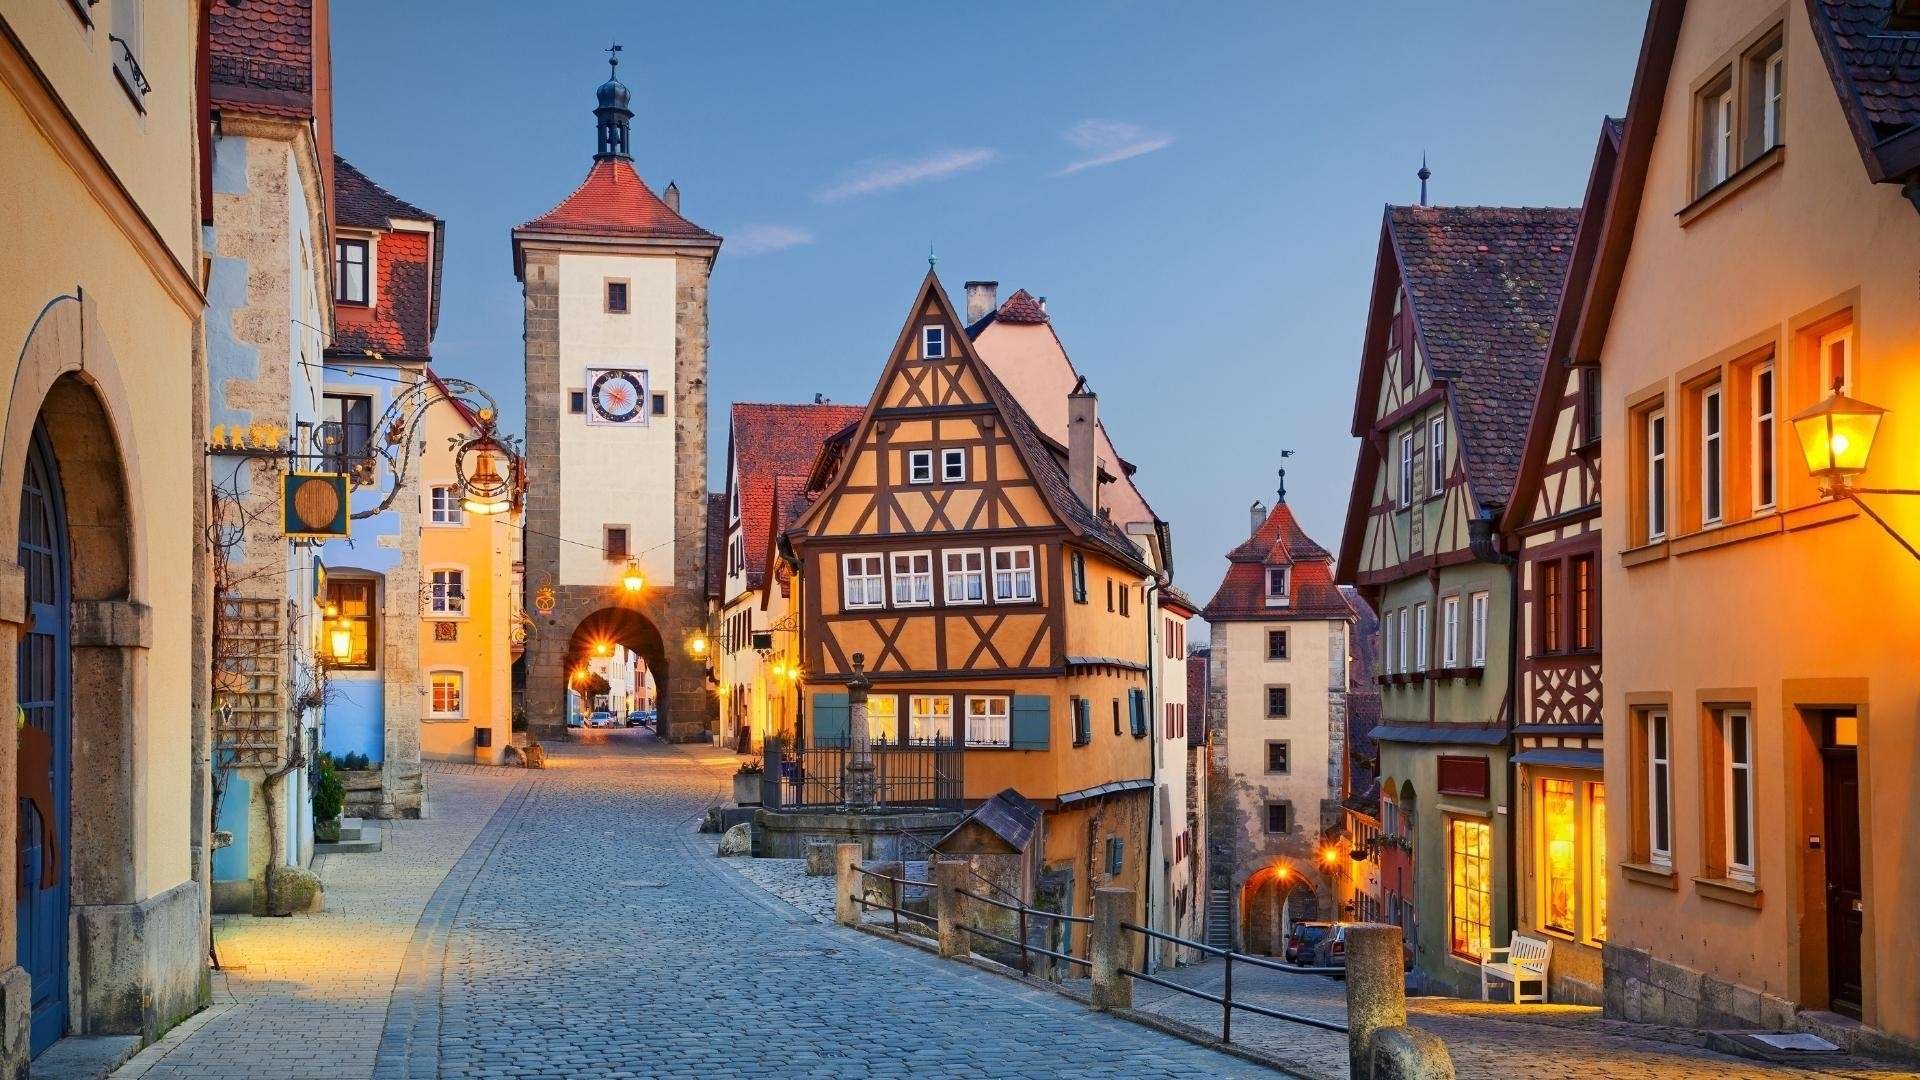 Rothenburg es una de las ciudades más bonitas de la ruta romántica de Alemania